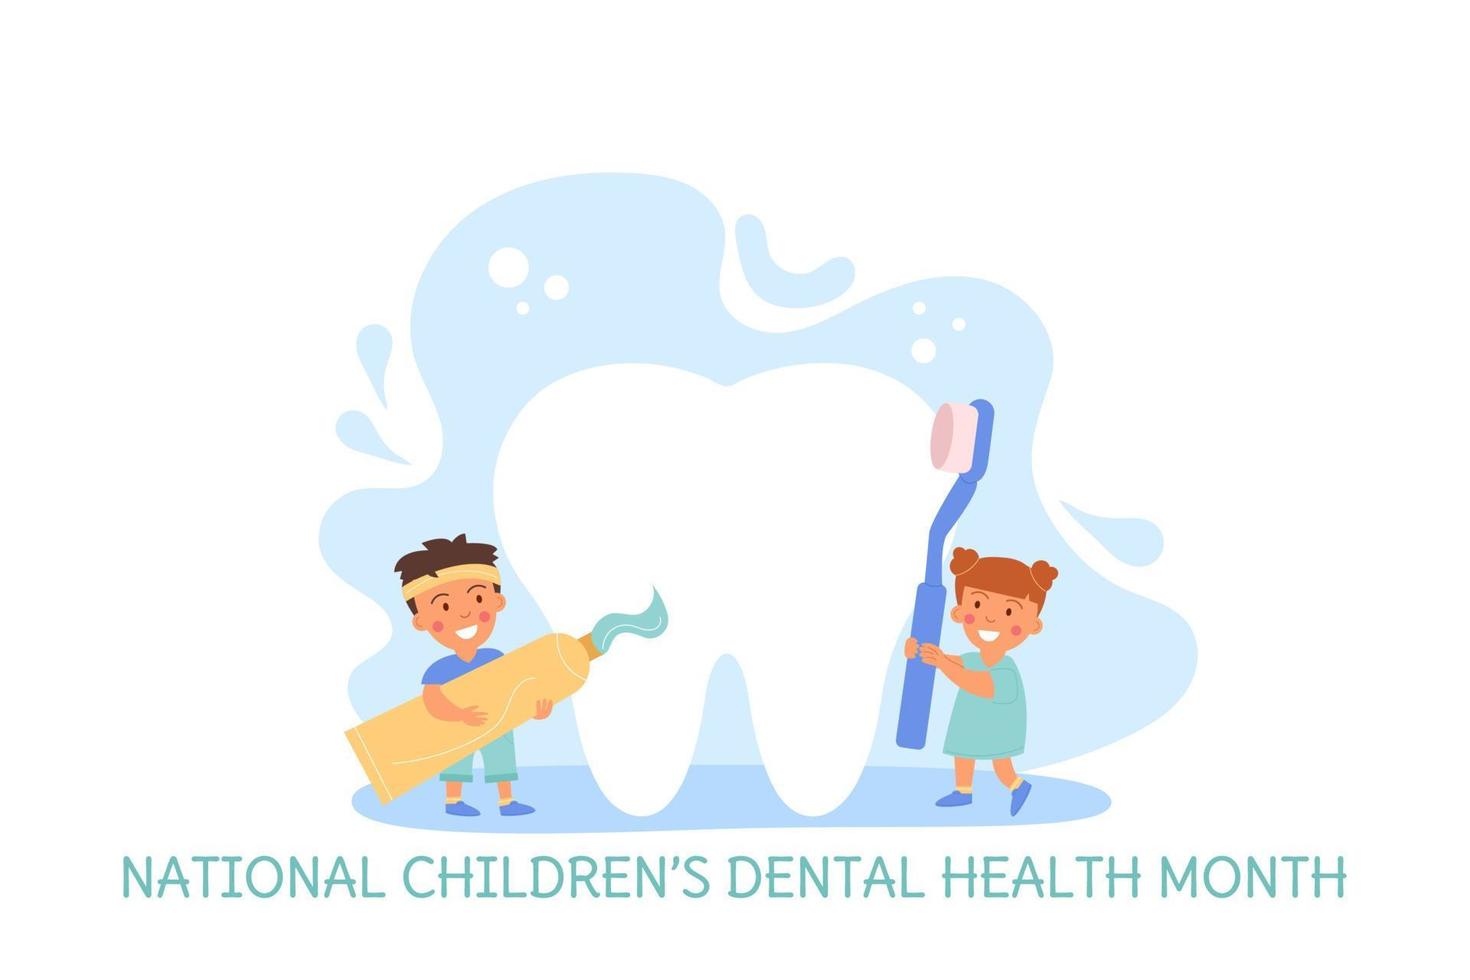 Children brushing teeth.  National Childrens Dental Health Month. Banner vector